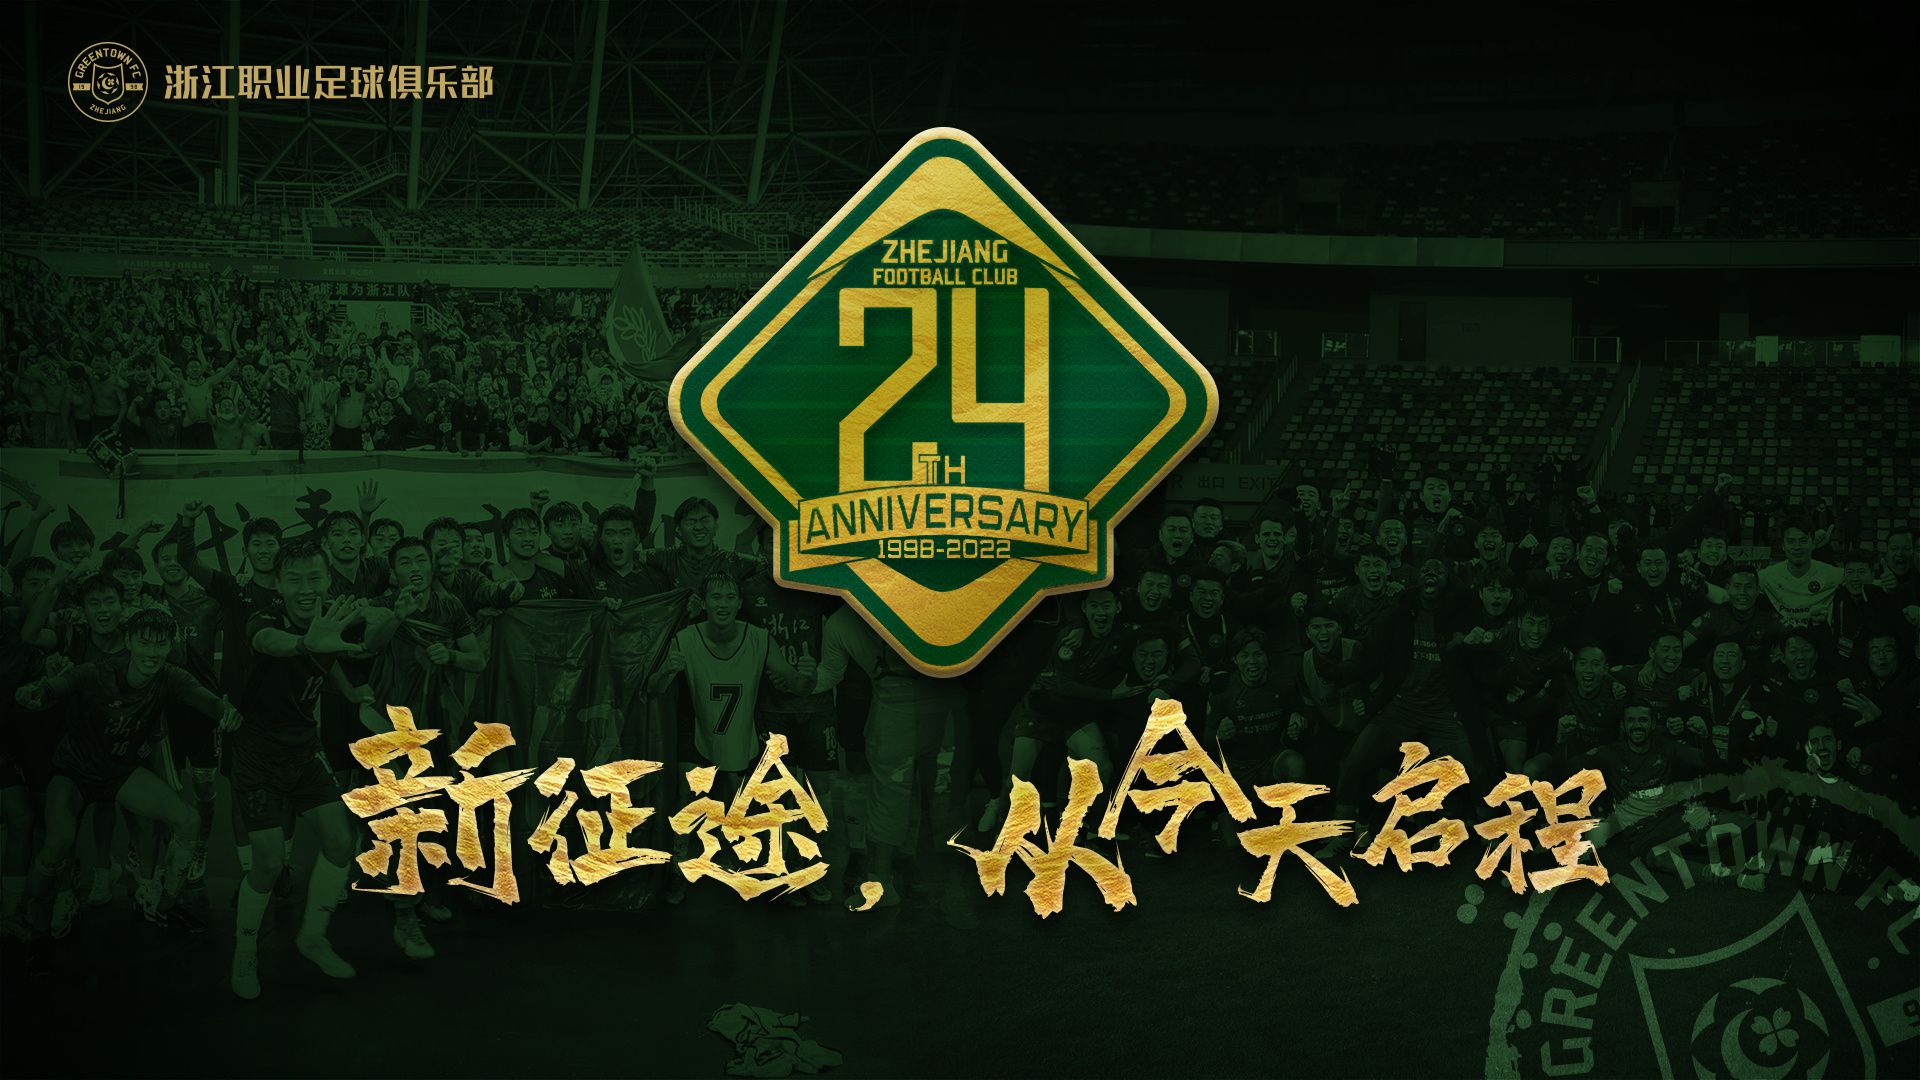 成立24周年纪念日，浙江队发布海报：新征途，从今天启程 ​​​